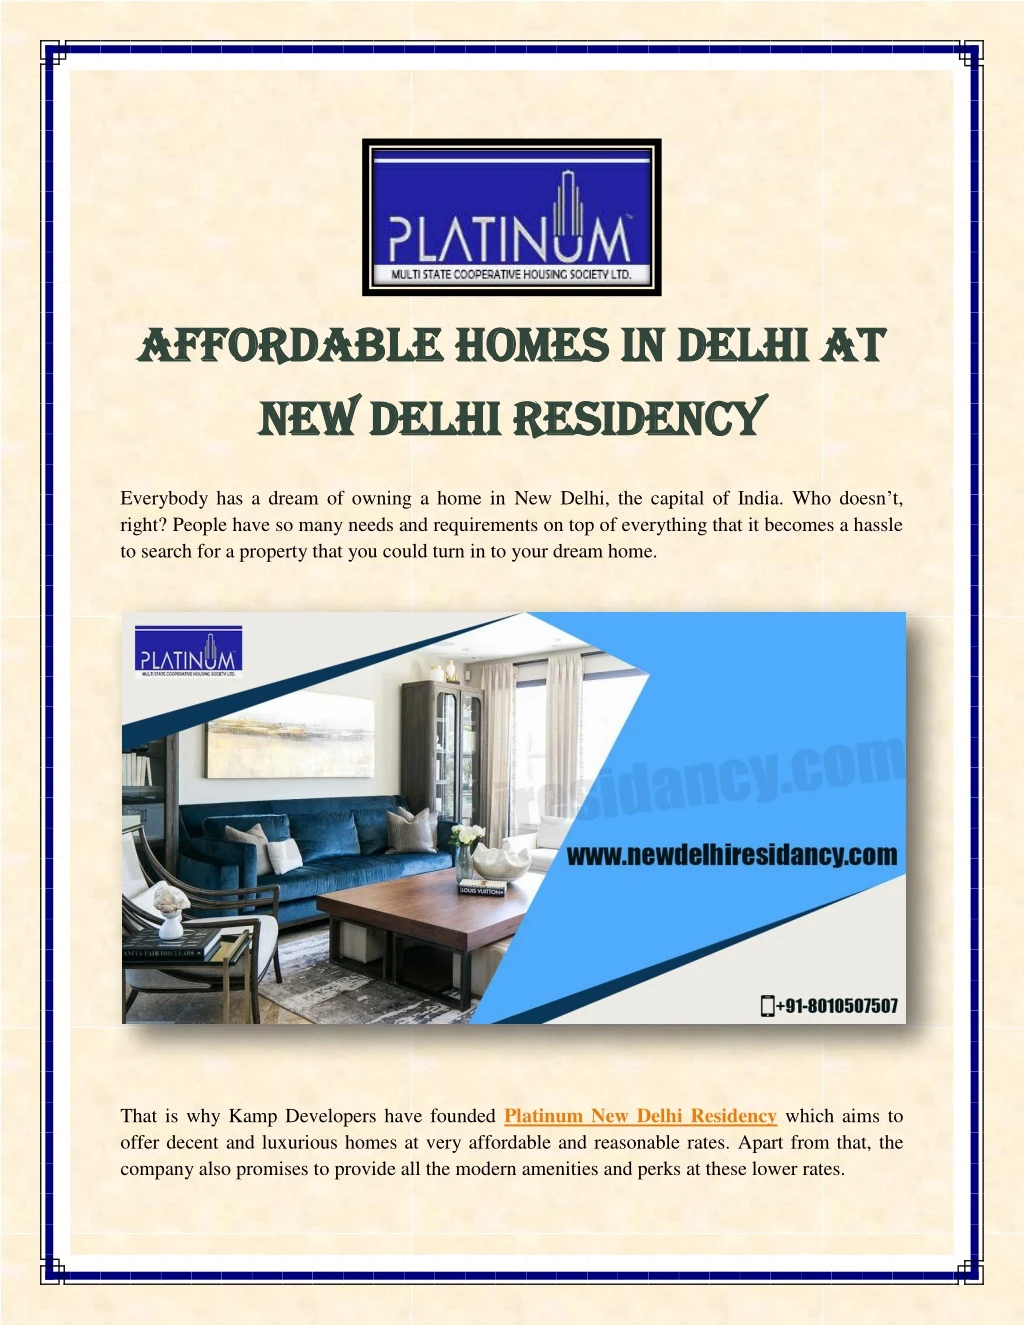 afforda affordable homes in delhi at ble homes n.